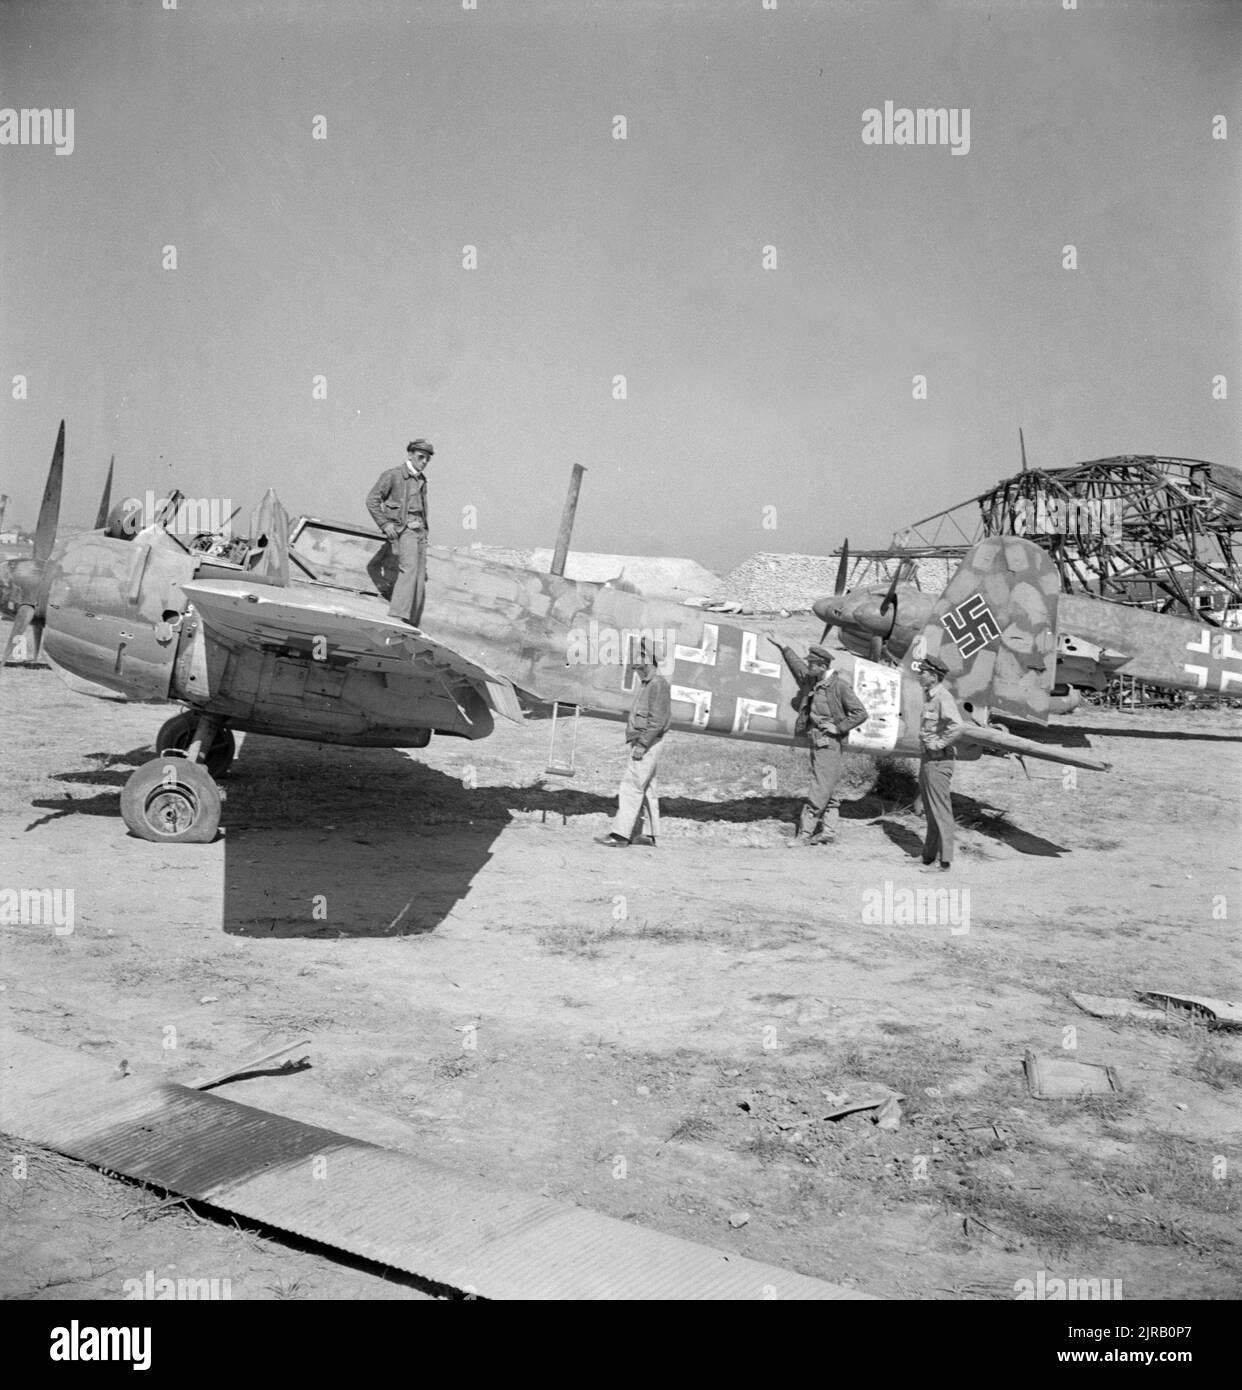 Une photo d'époque datant de mai 1943 montrant des pilotes américains inspectant un avion allemand Henschel HS 129 qui a été détruit et qui a été attaqué au sol à El Aouiana Tunisie après la défaite des forces de l'axe en Afrique du Nord au cours de la deuxième Guerre mondiale Banque D'Images